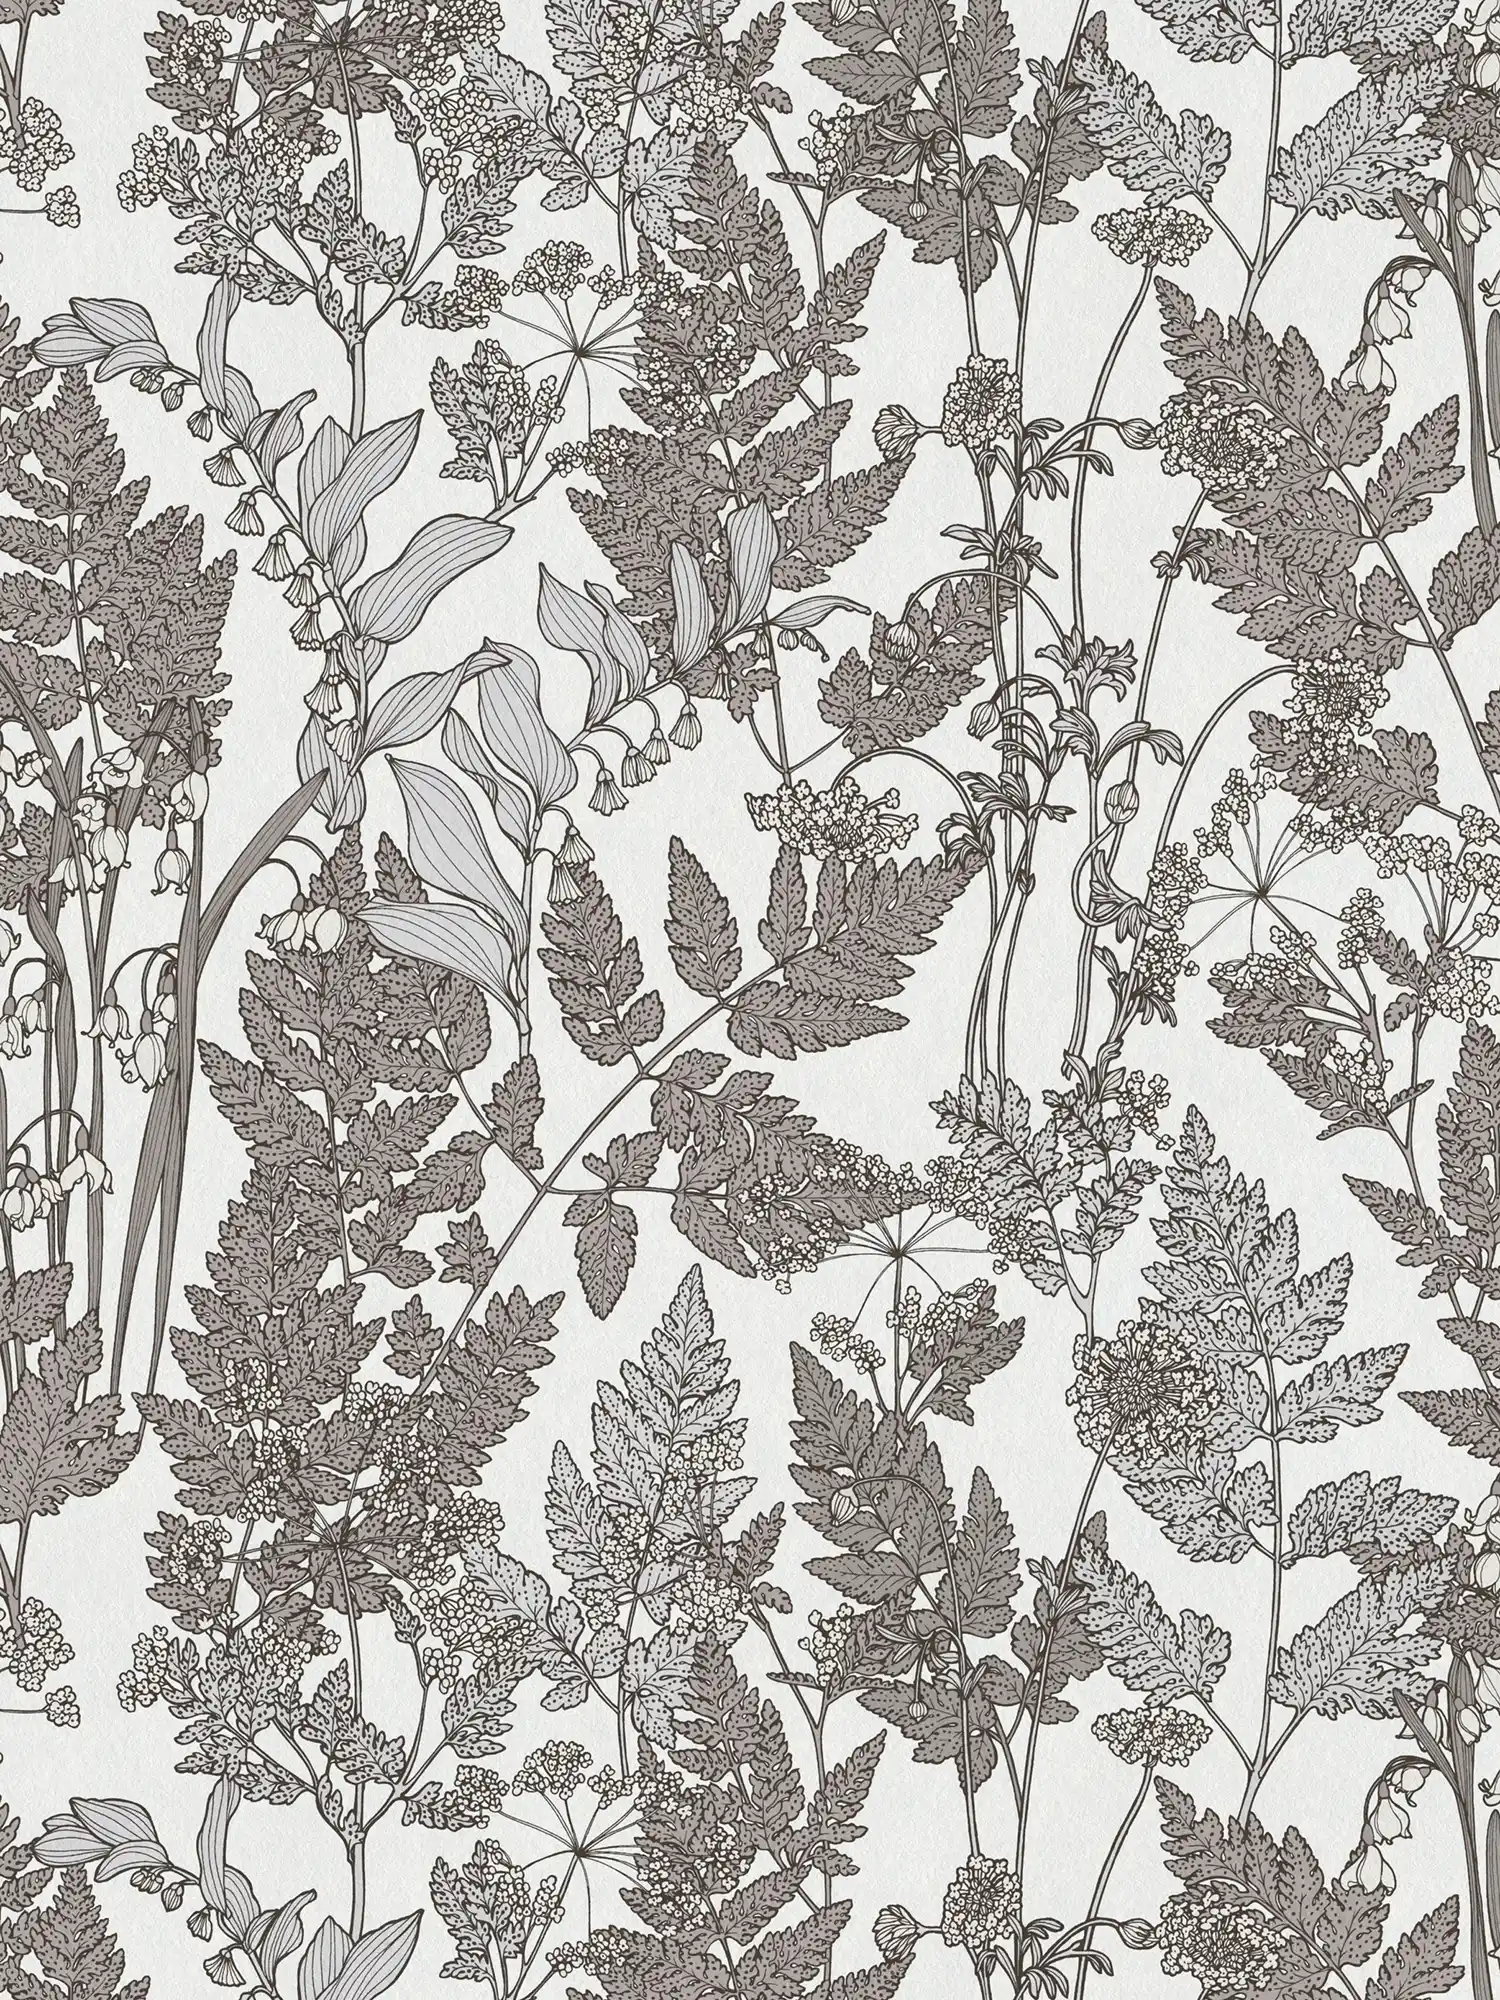 Natuurbehang bladeren & bloesems in moderne landelijke stijl - grijs, wit
